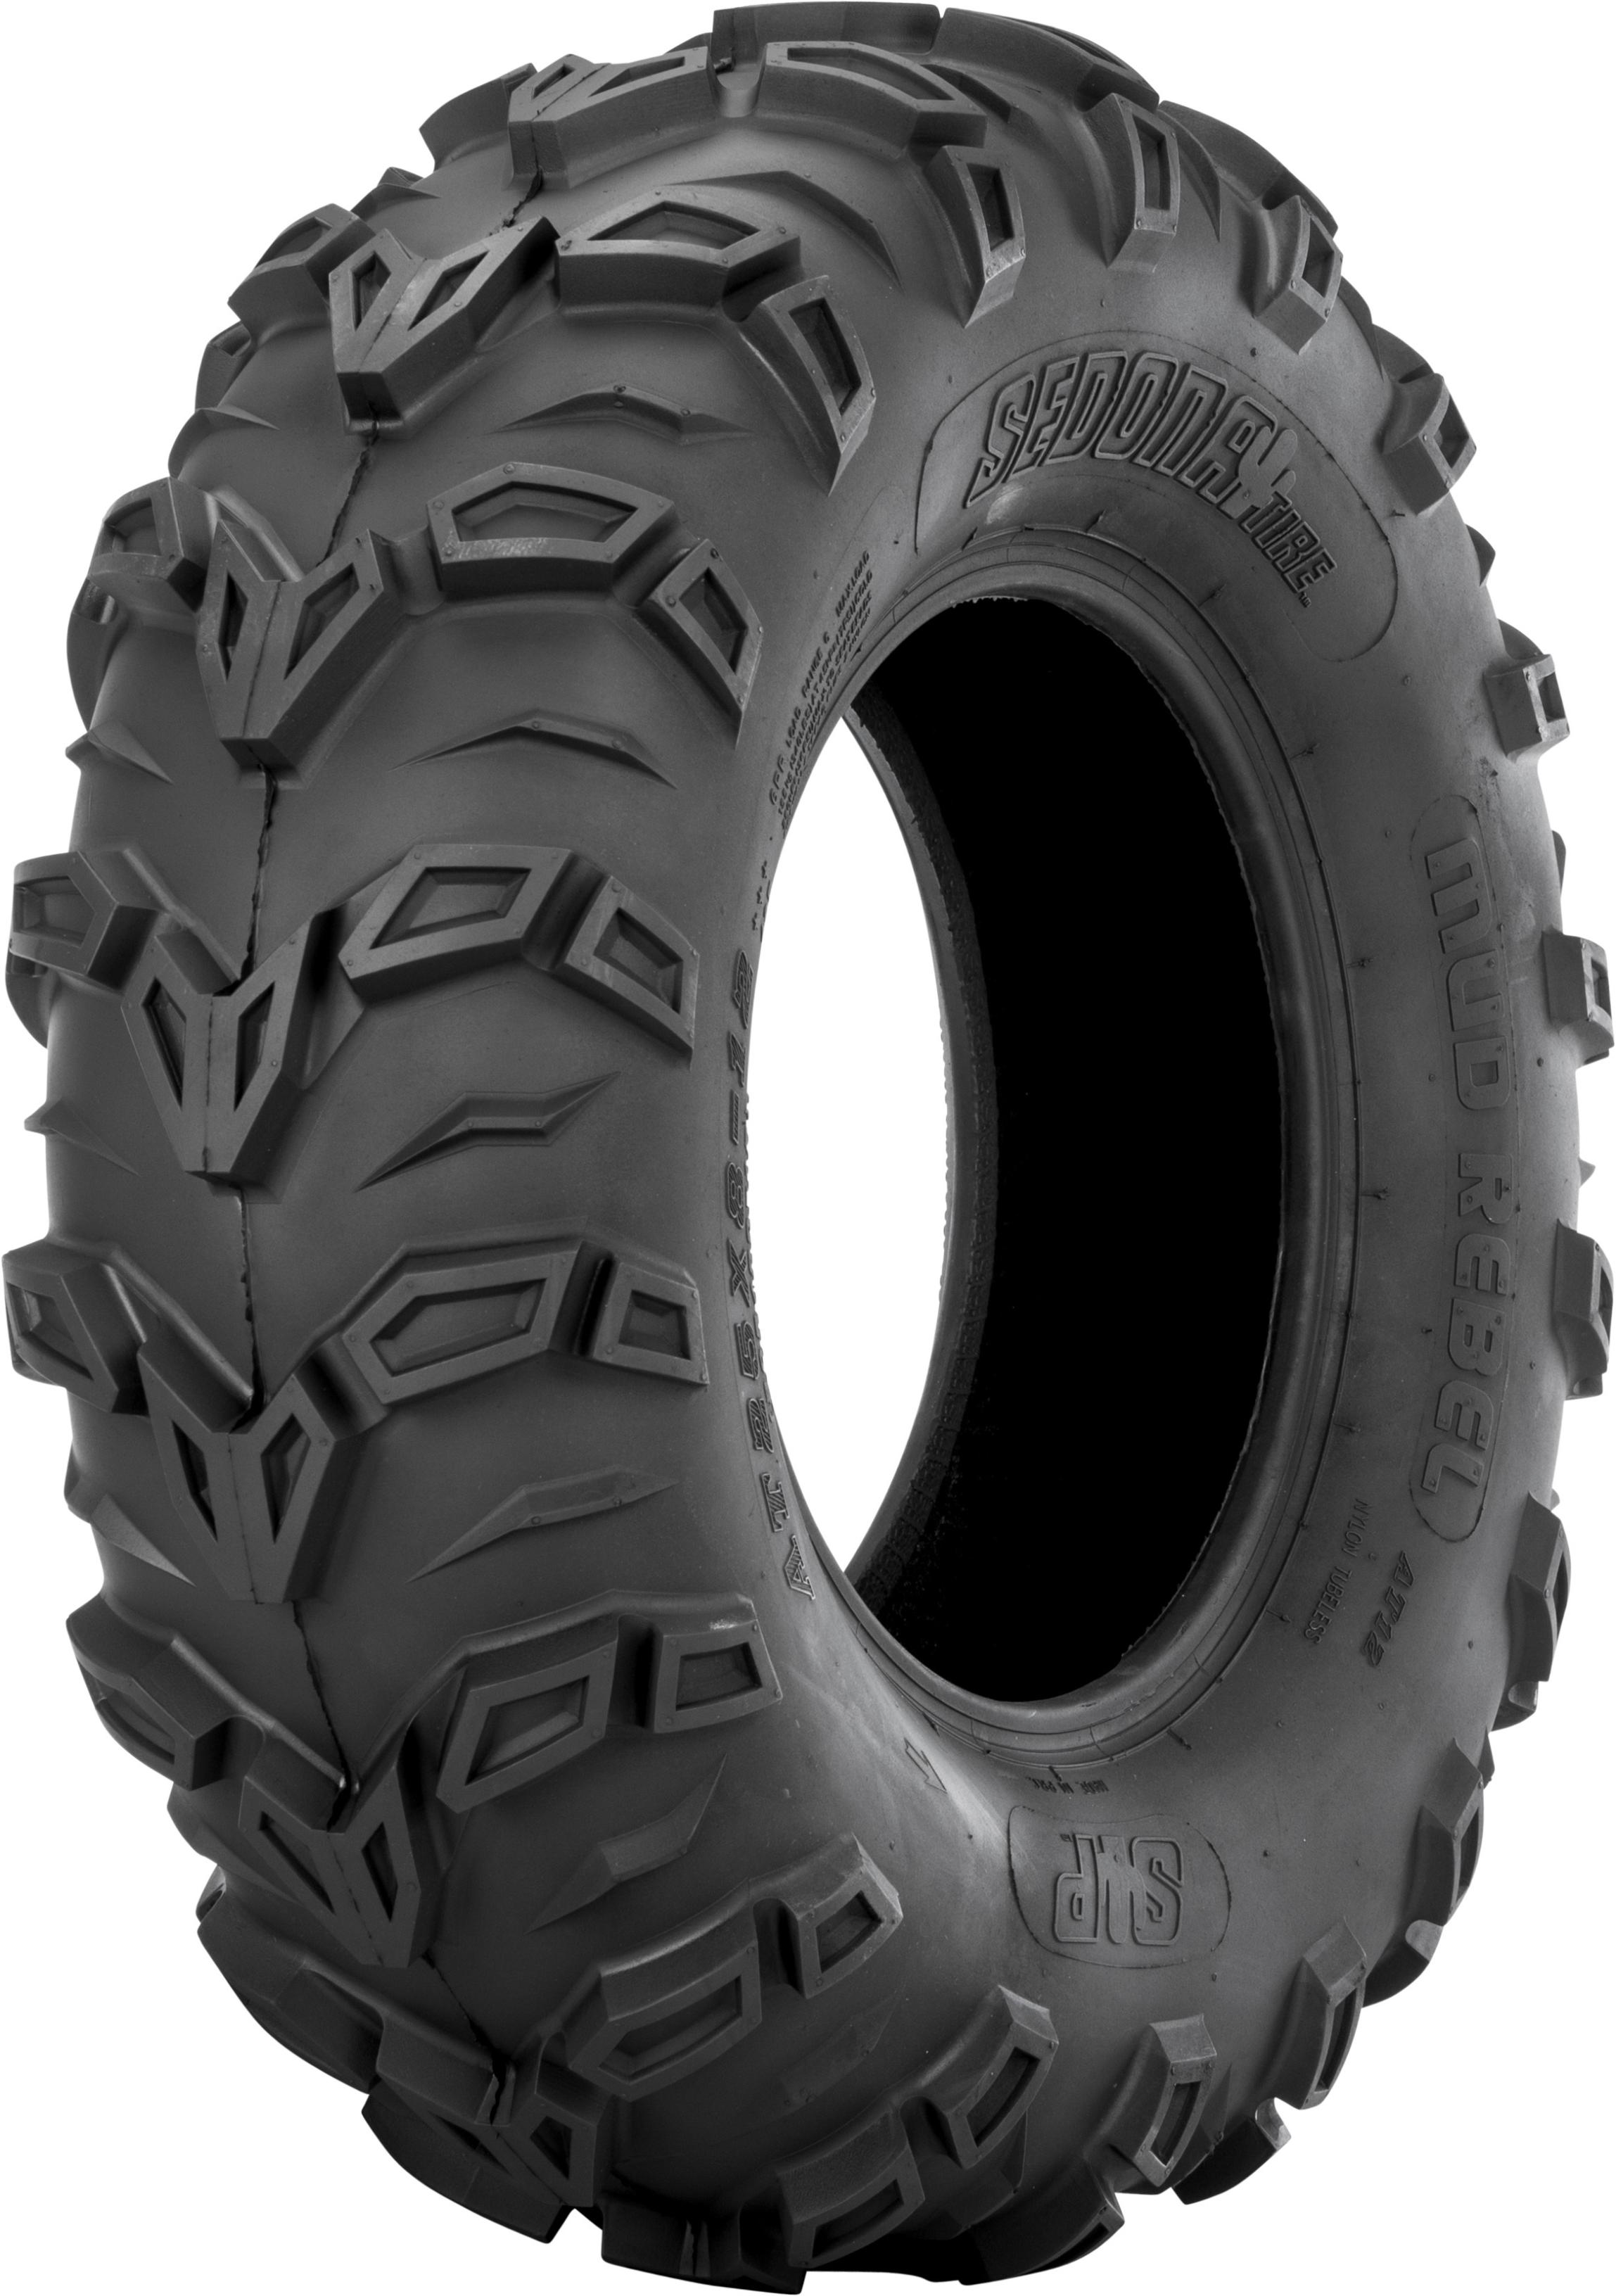 Sedona - Tire Mud Rebel 25x8-12 Bias 6pr Lr-340lbs - MR25812